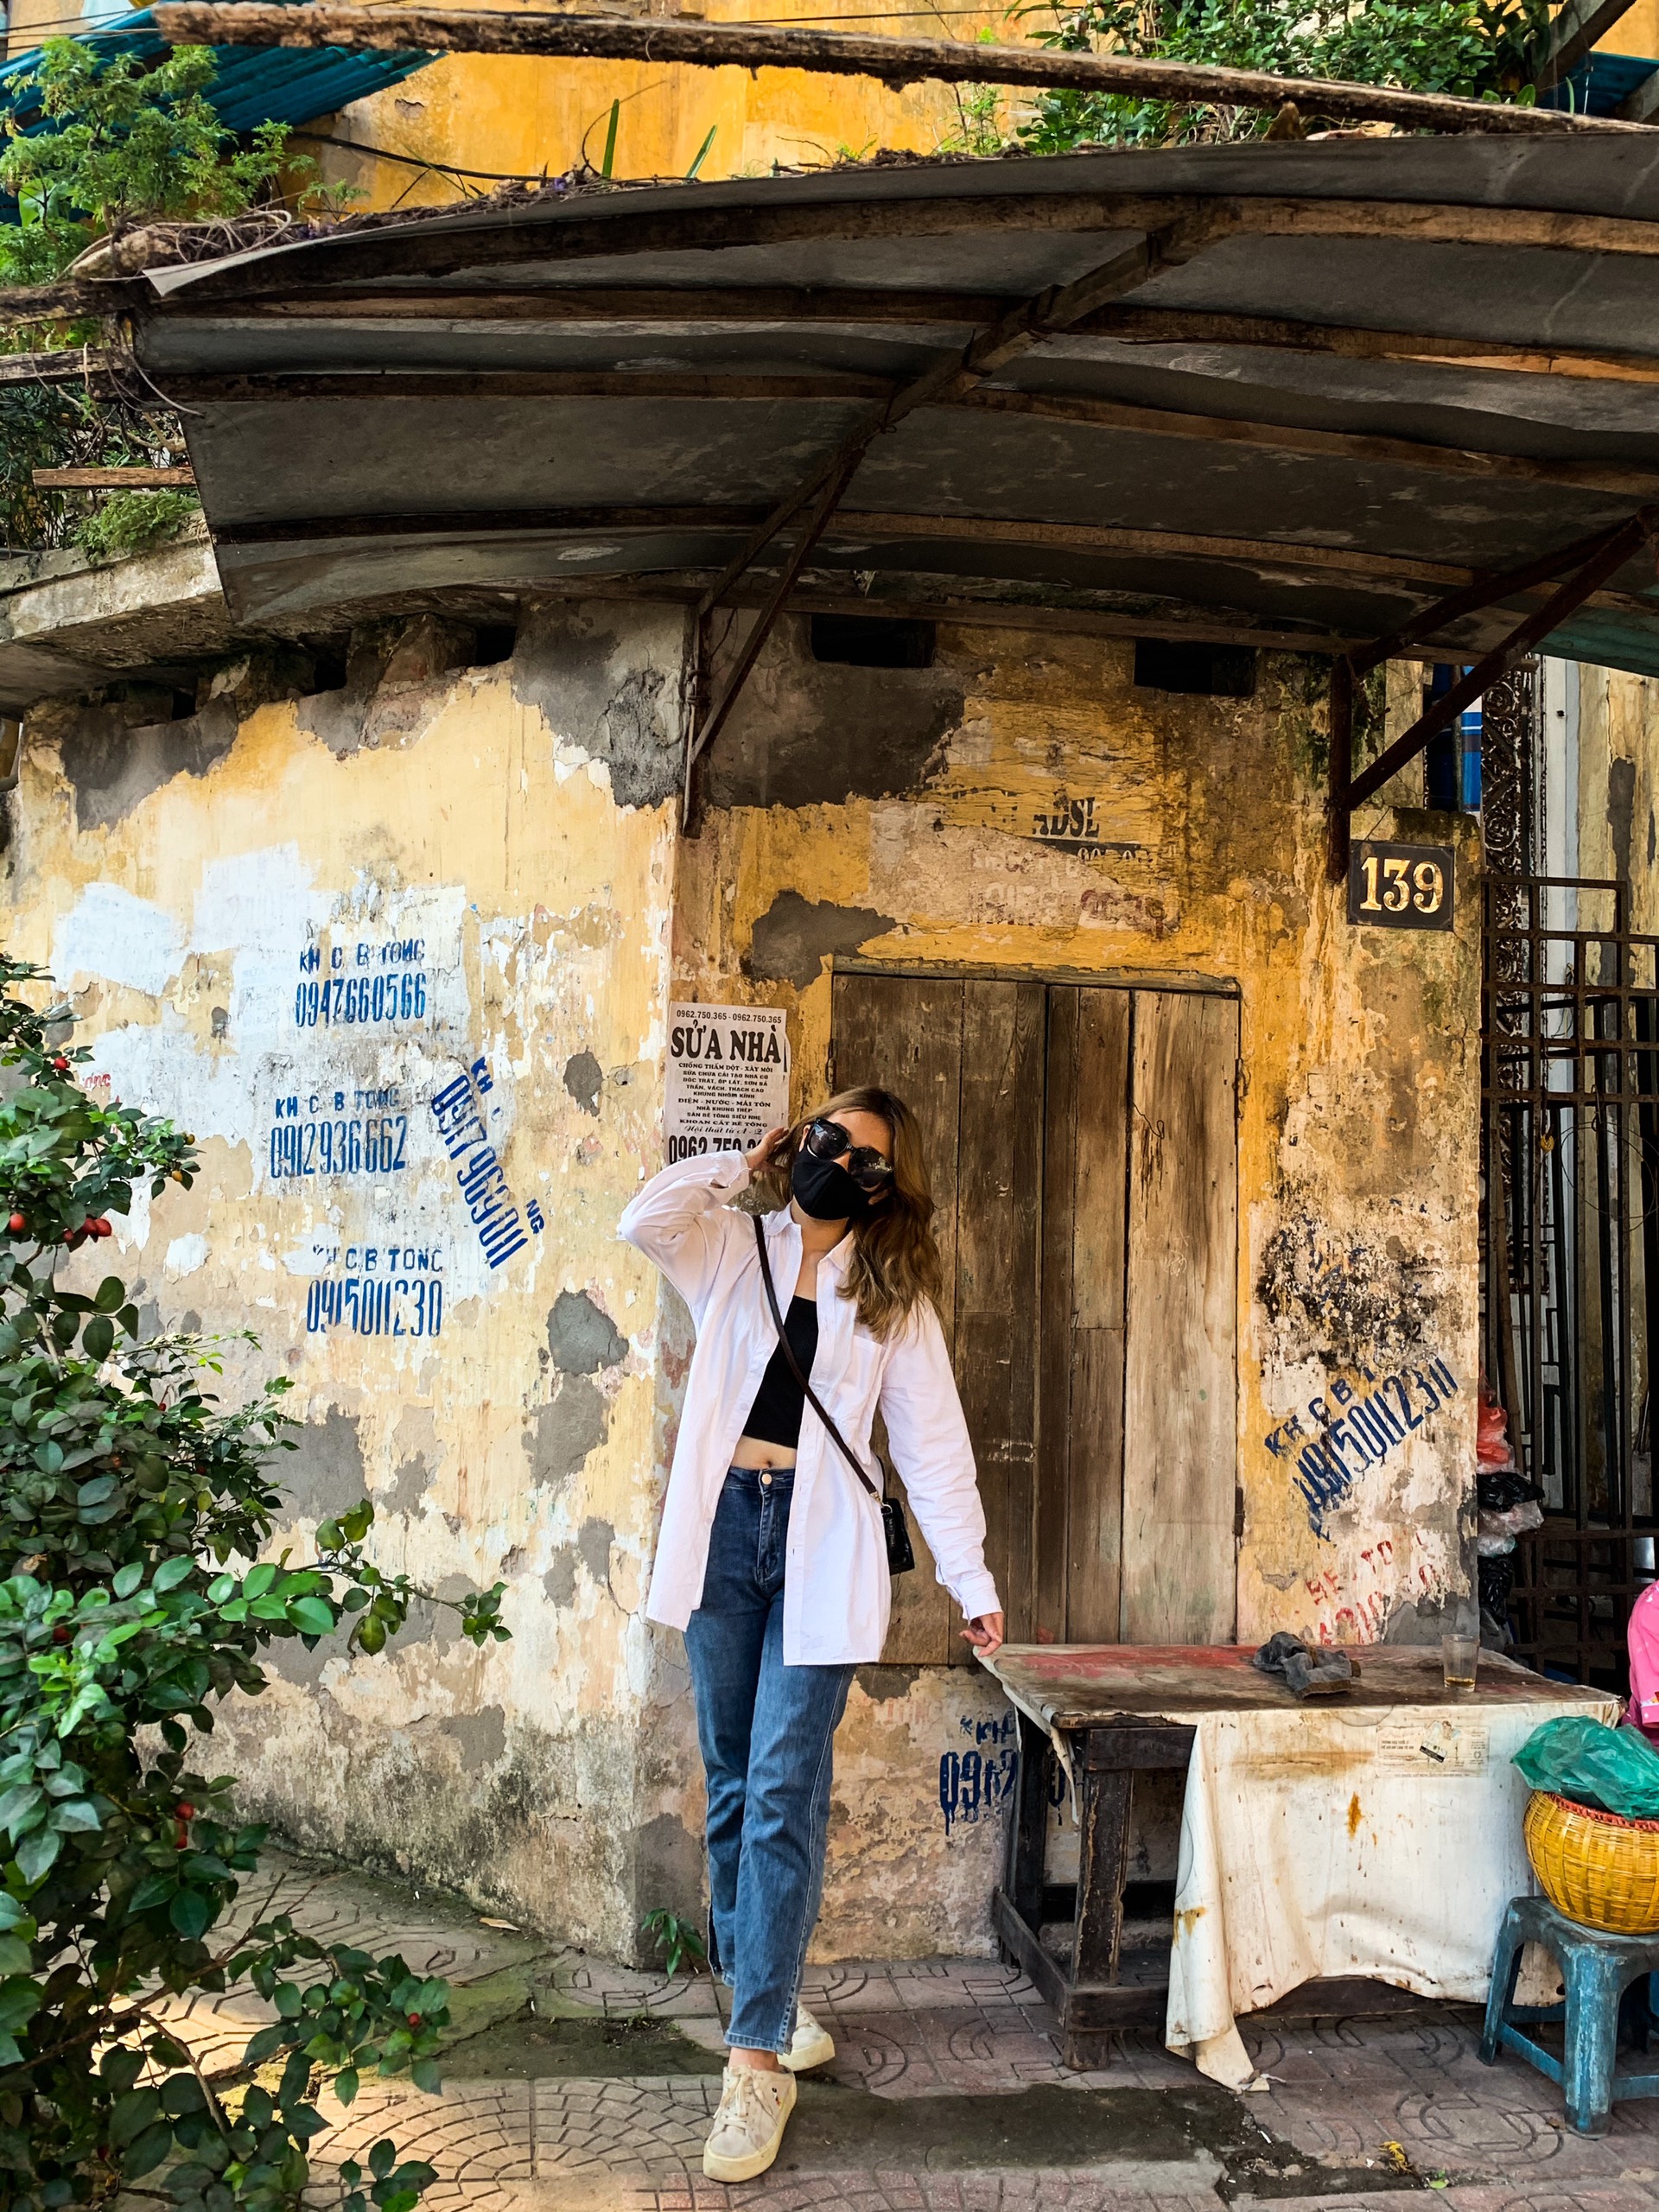 Phố cổ: Được bảo tồn vẻ đẹp từ thế kỷ 19, phố cổ Hội An vẫn là một trong những điểm đến nổi tiếng nhất của Việt Nam. Với kiến trúc độc đáo và lịch sử lâu đời, phố cổ Hội An đang trở thành một trong những điểm đến yêu thích của du khách quốc tế. Hãy cùng chúng tôi đặt chân đến phố cổ Hội An để khám phá vẻ đẹp của nó.